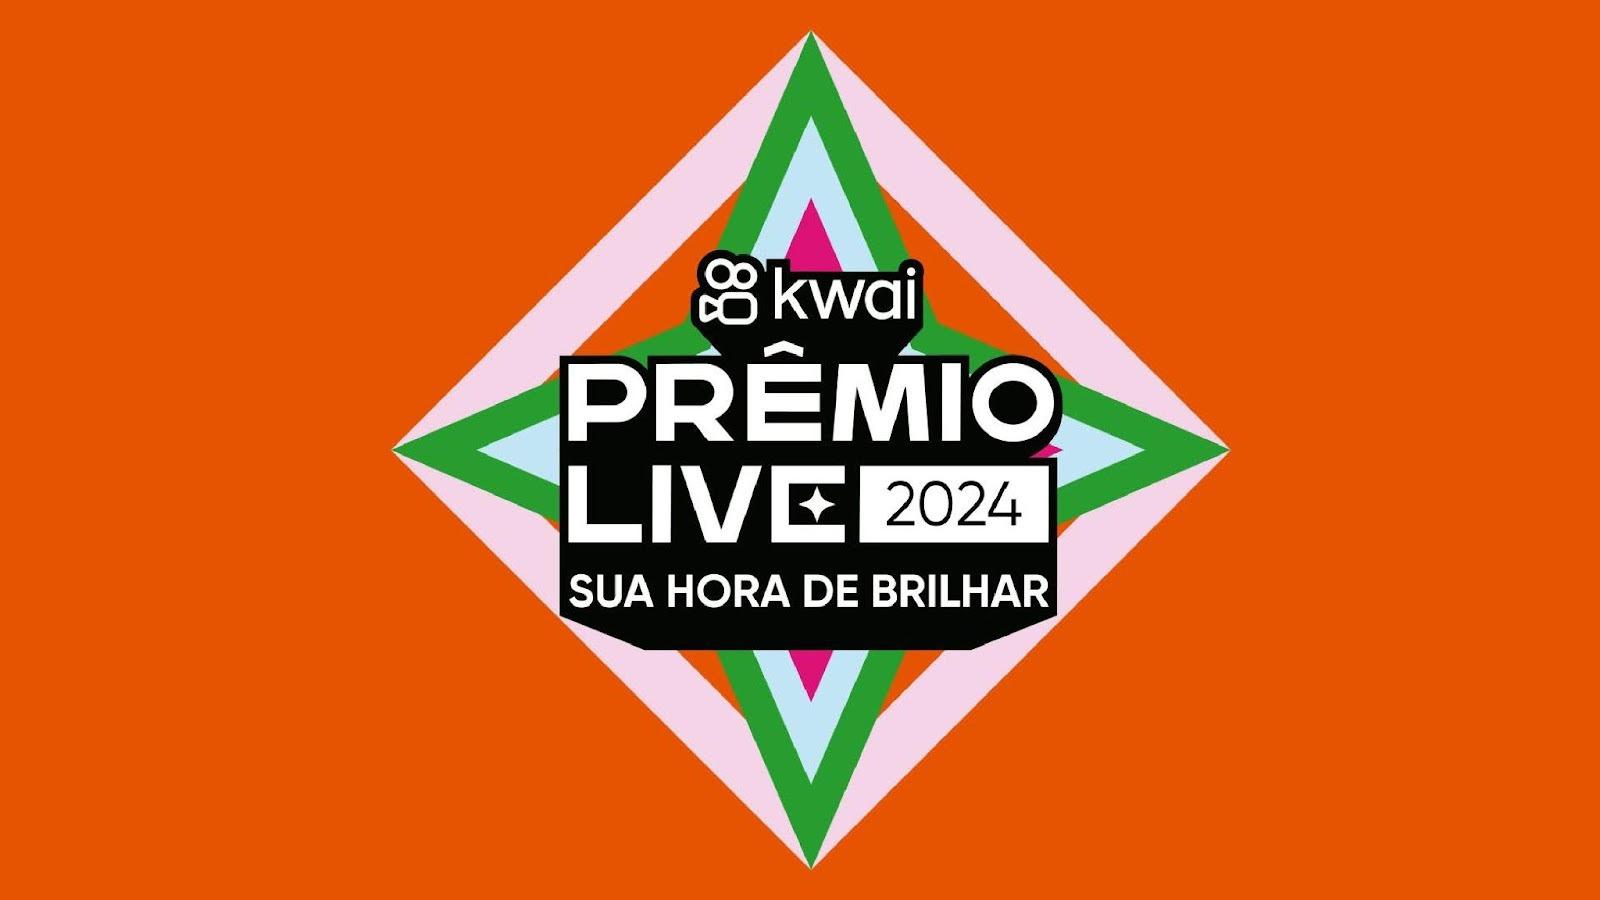 Kwai celebra criadores de lives com a primeira edição do Prêmio Live Kwai